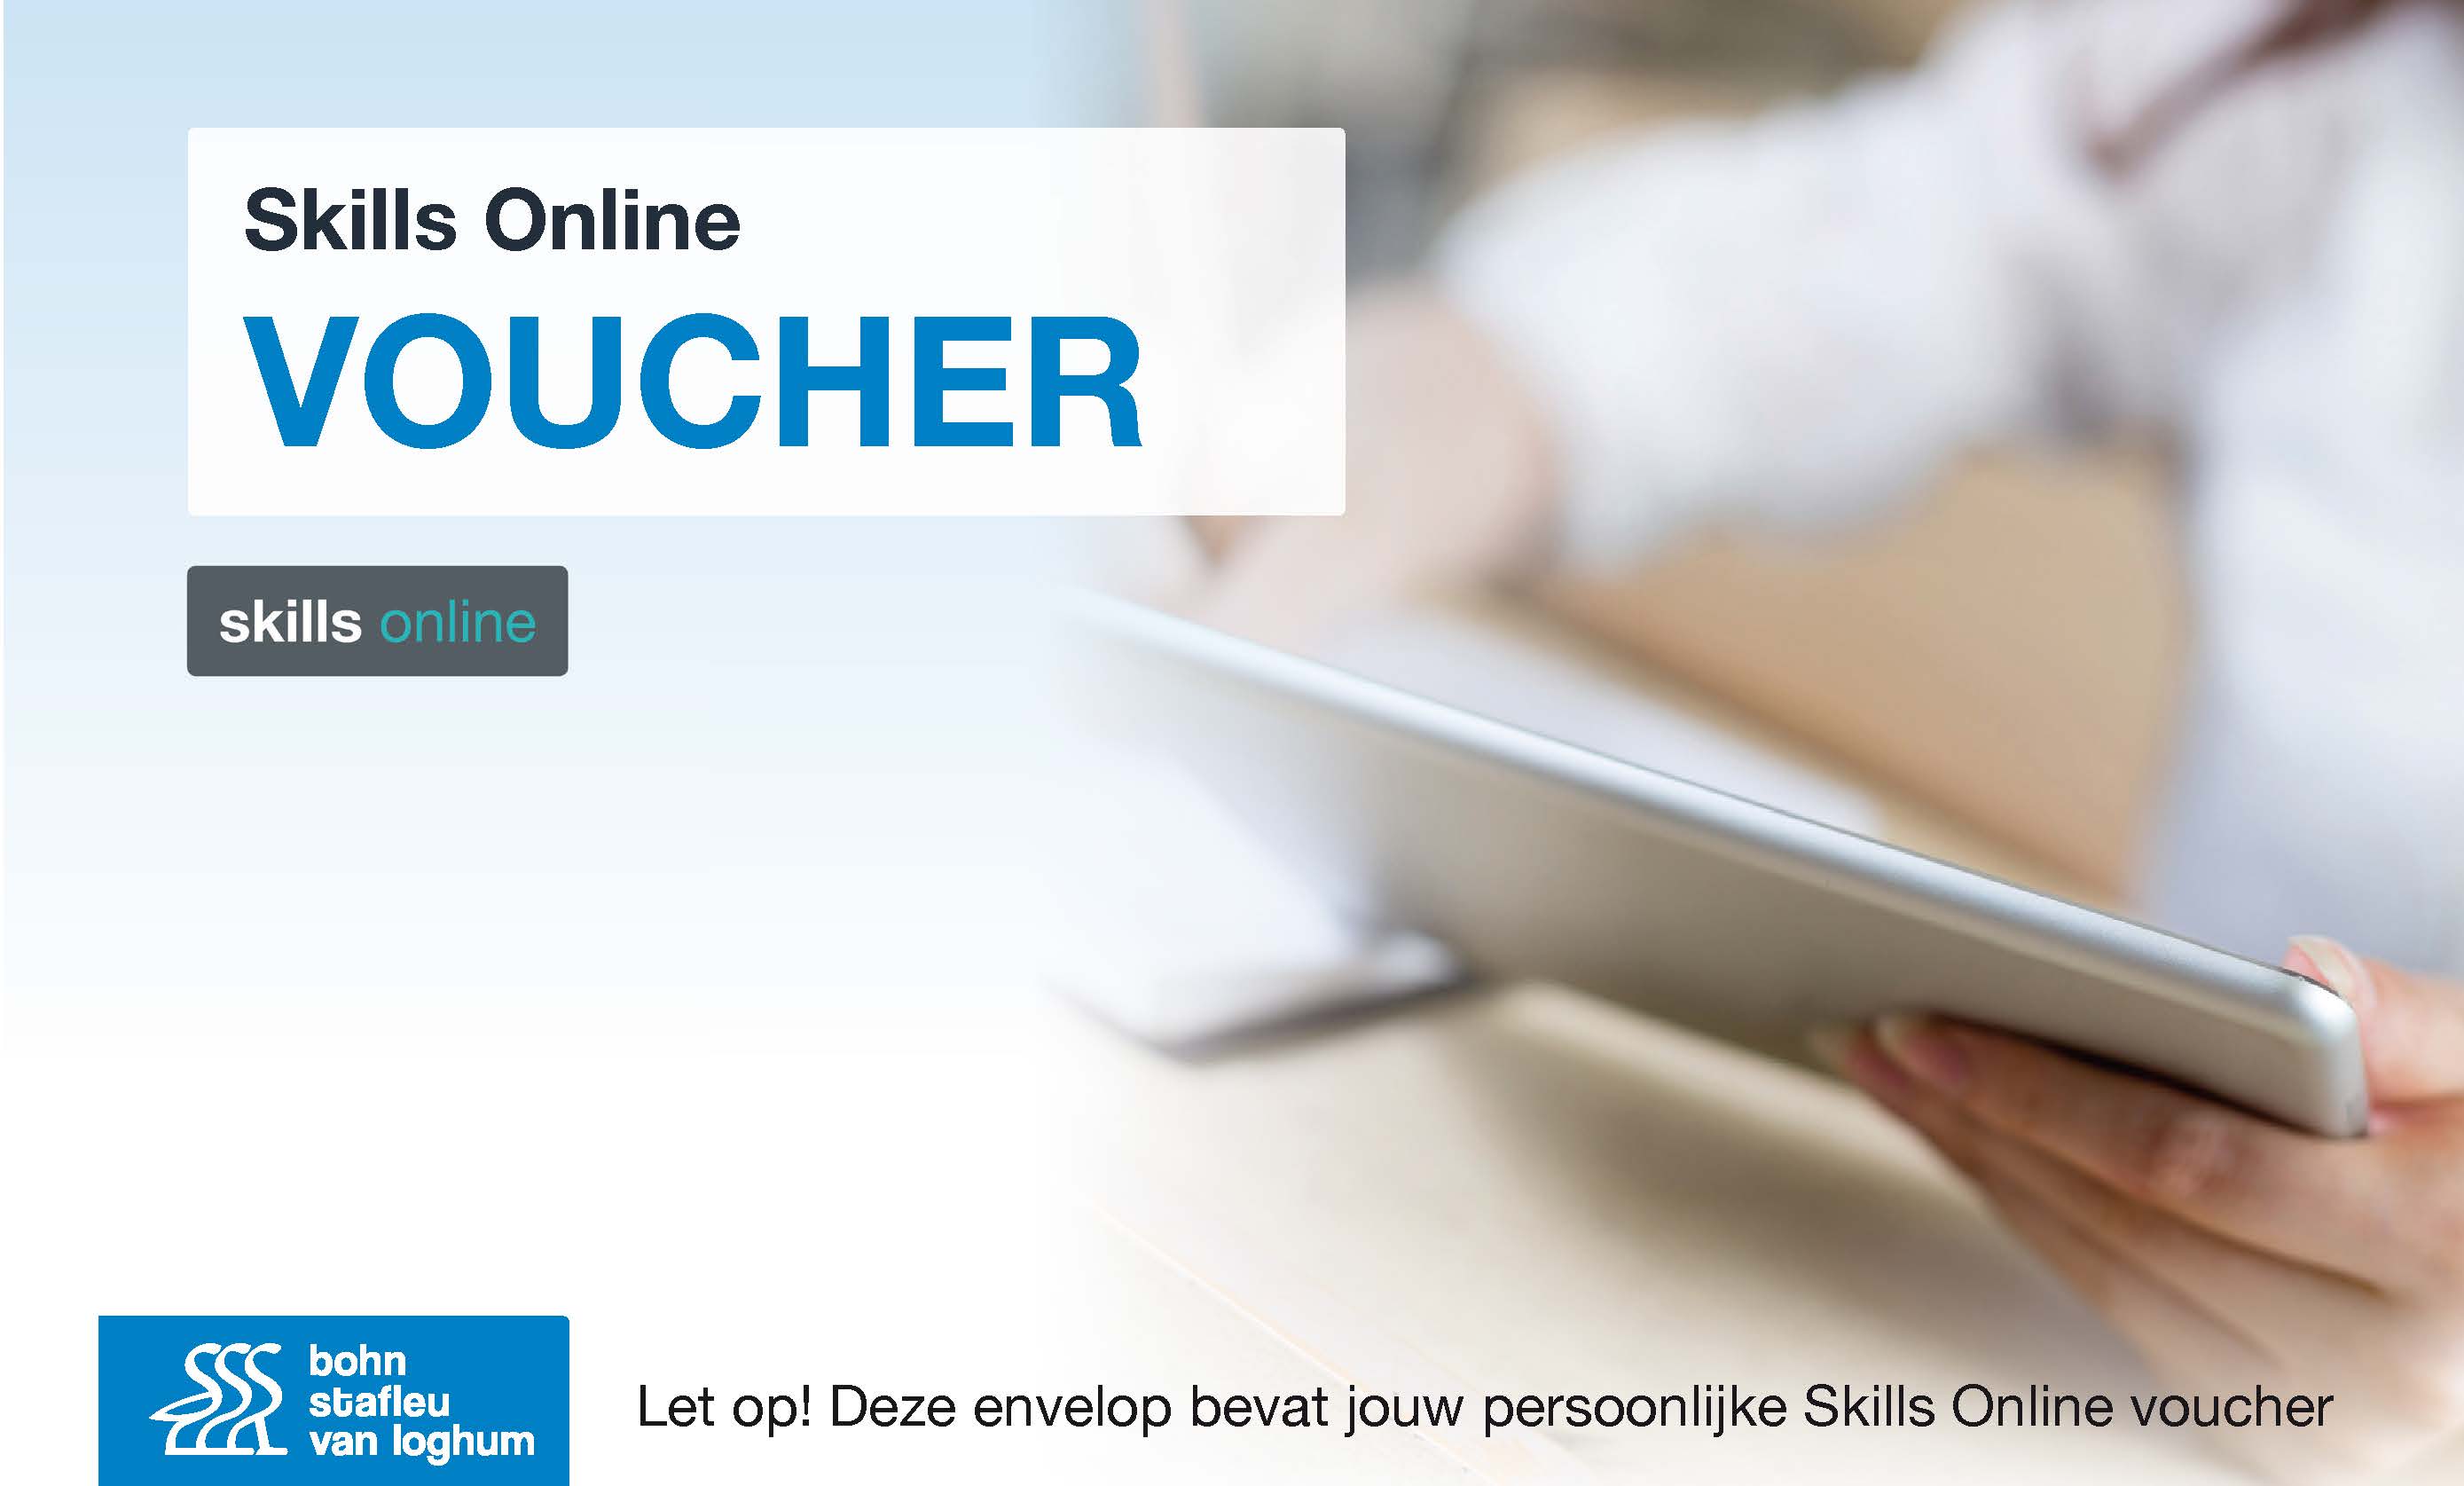 Skills online voucher